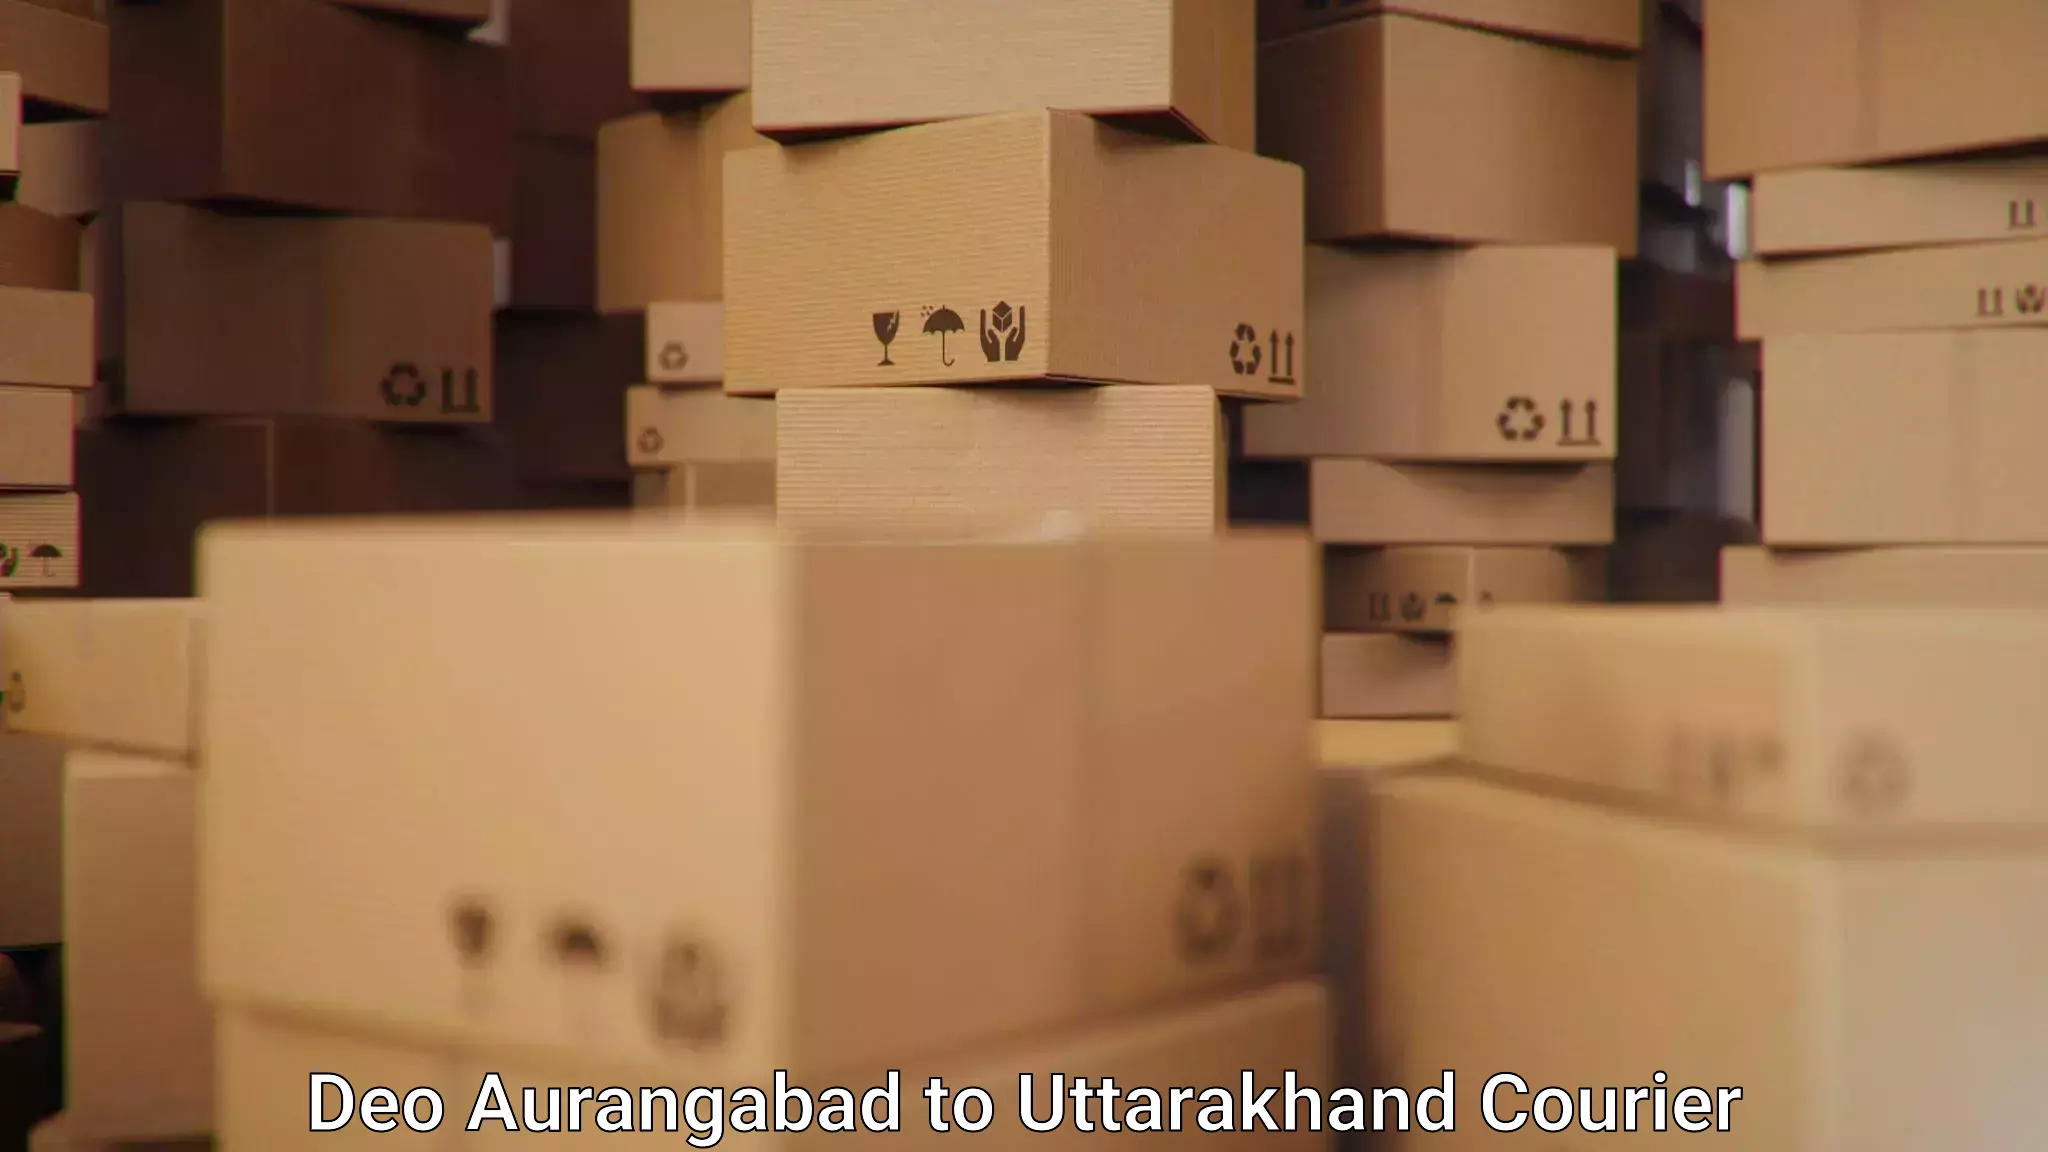 Efficient parcel tracking Deo Aurangabad to Uttarkashi